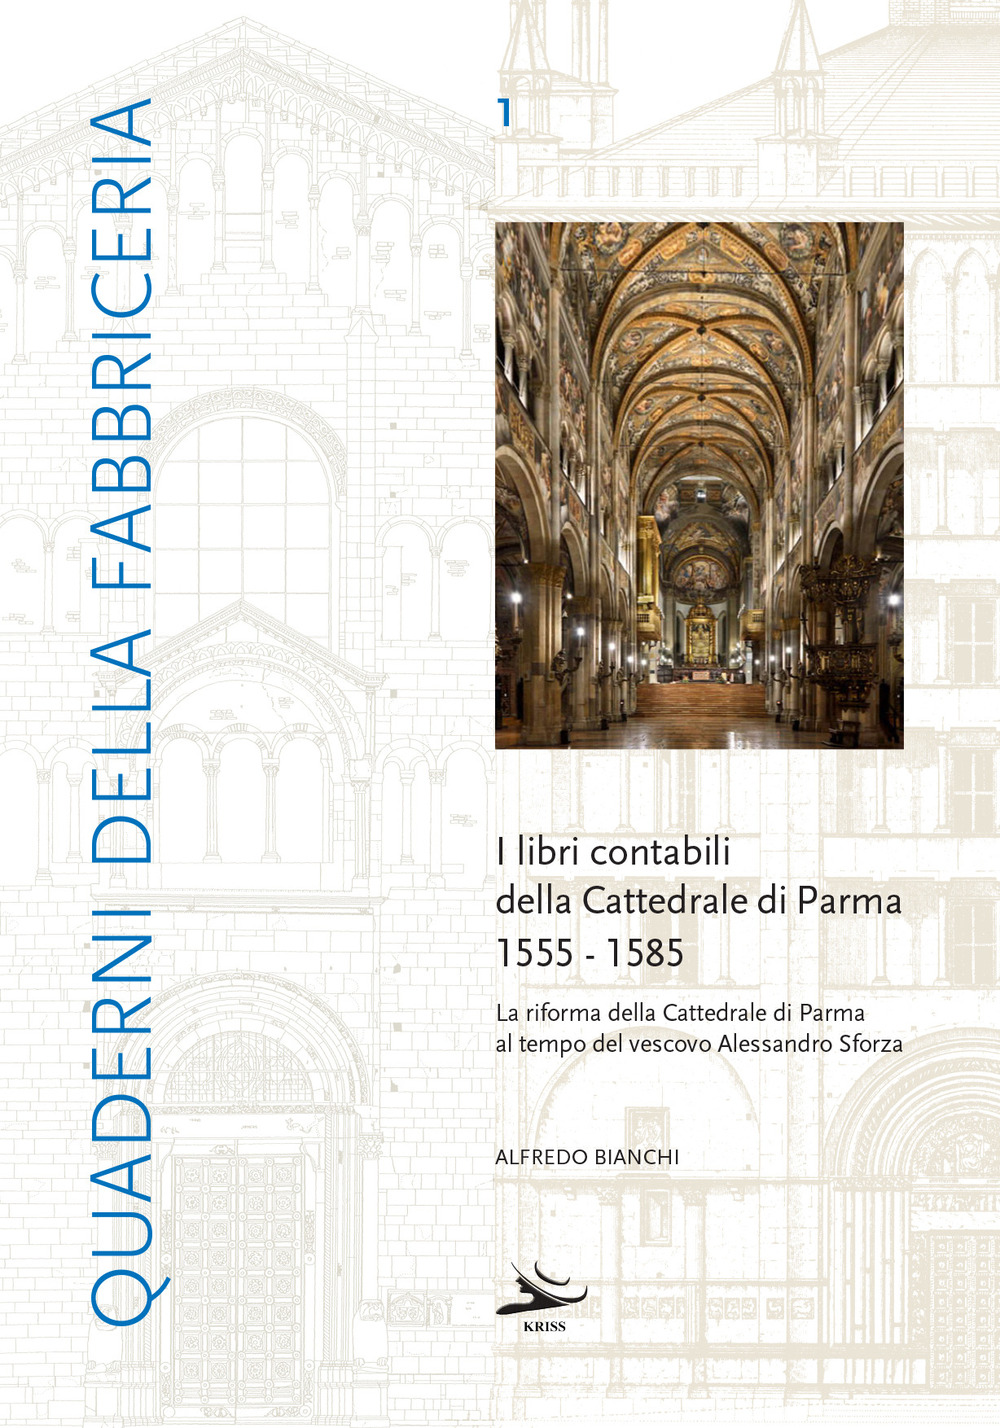 I libri contabili della cattedrale di Parma 1555-1585